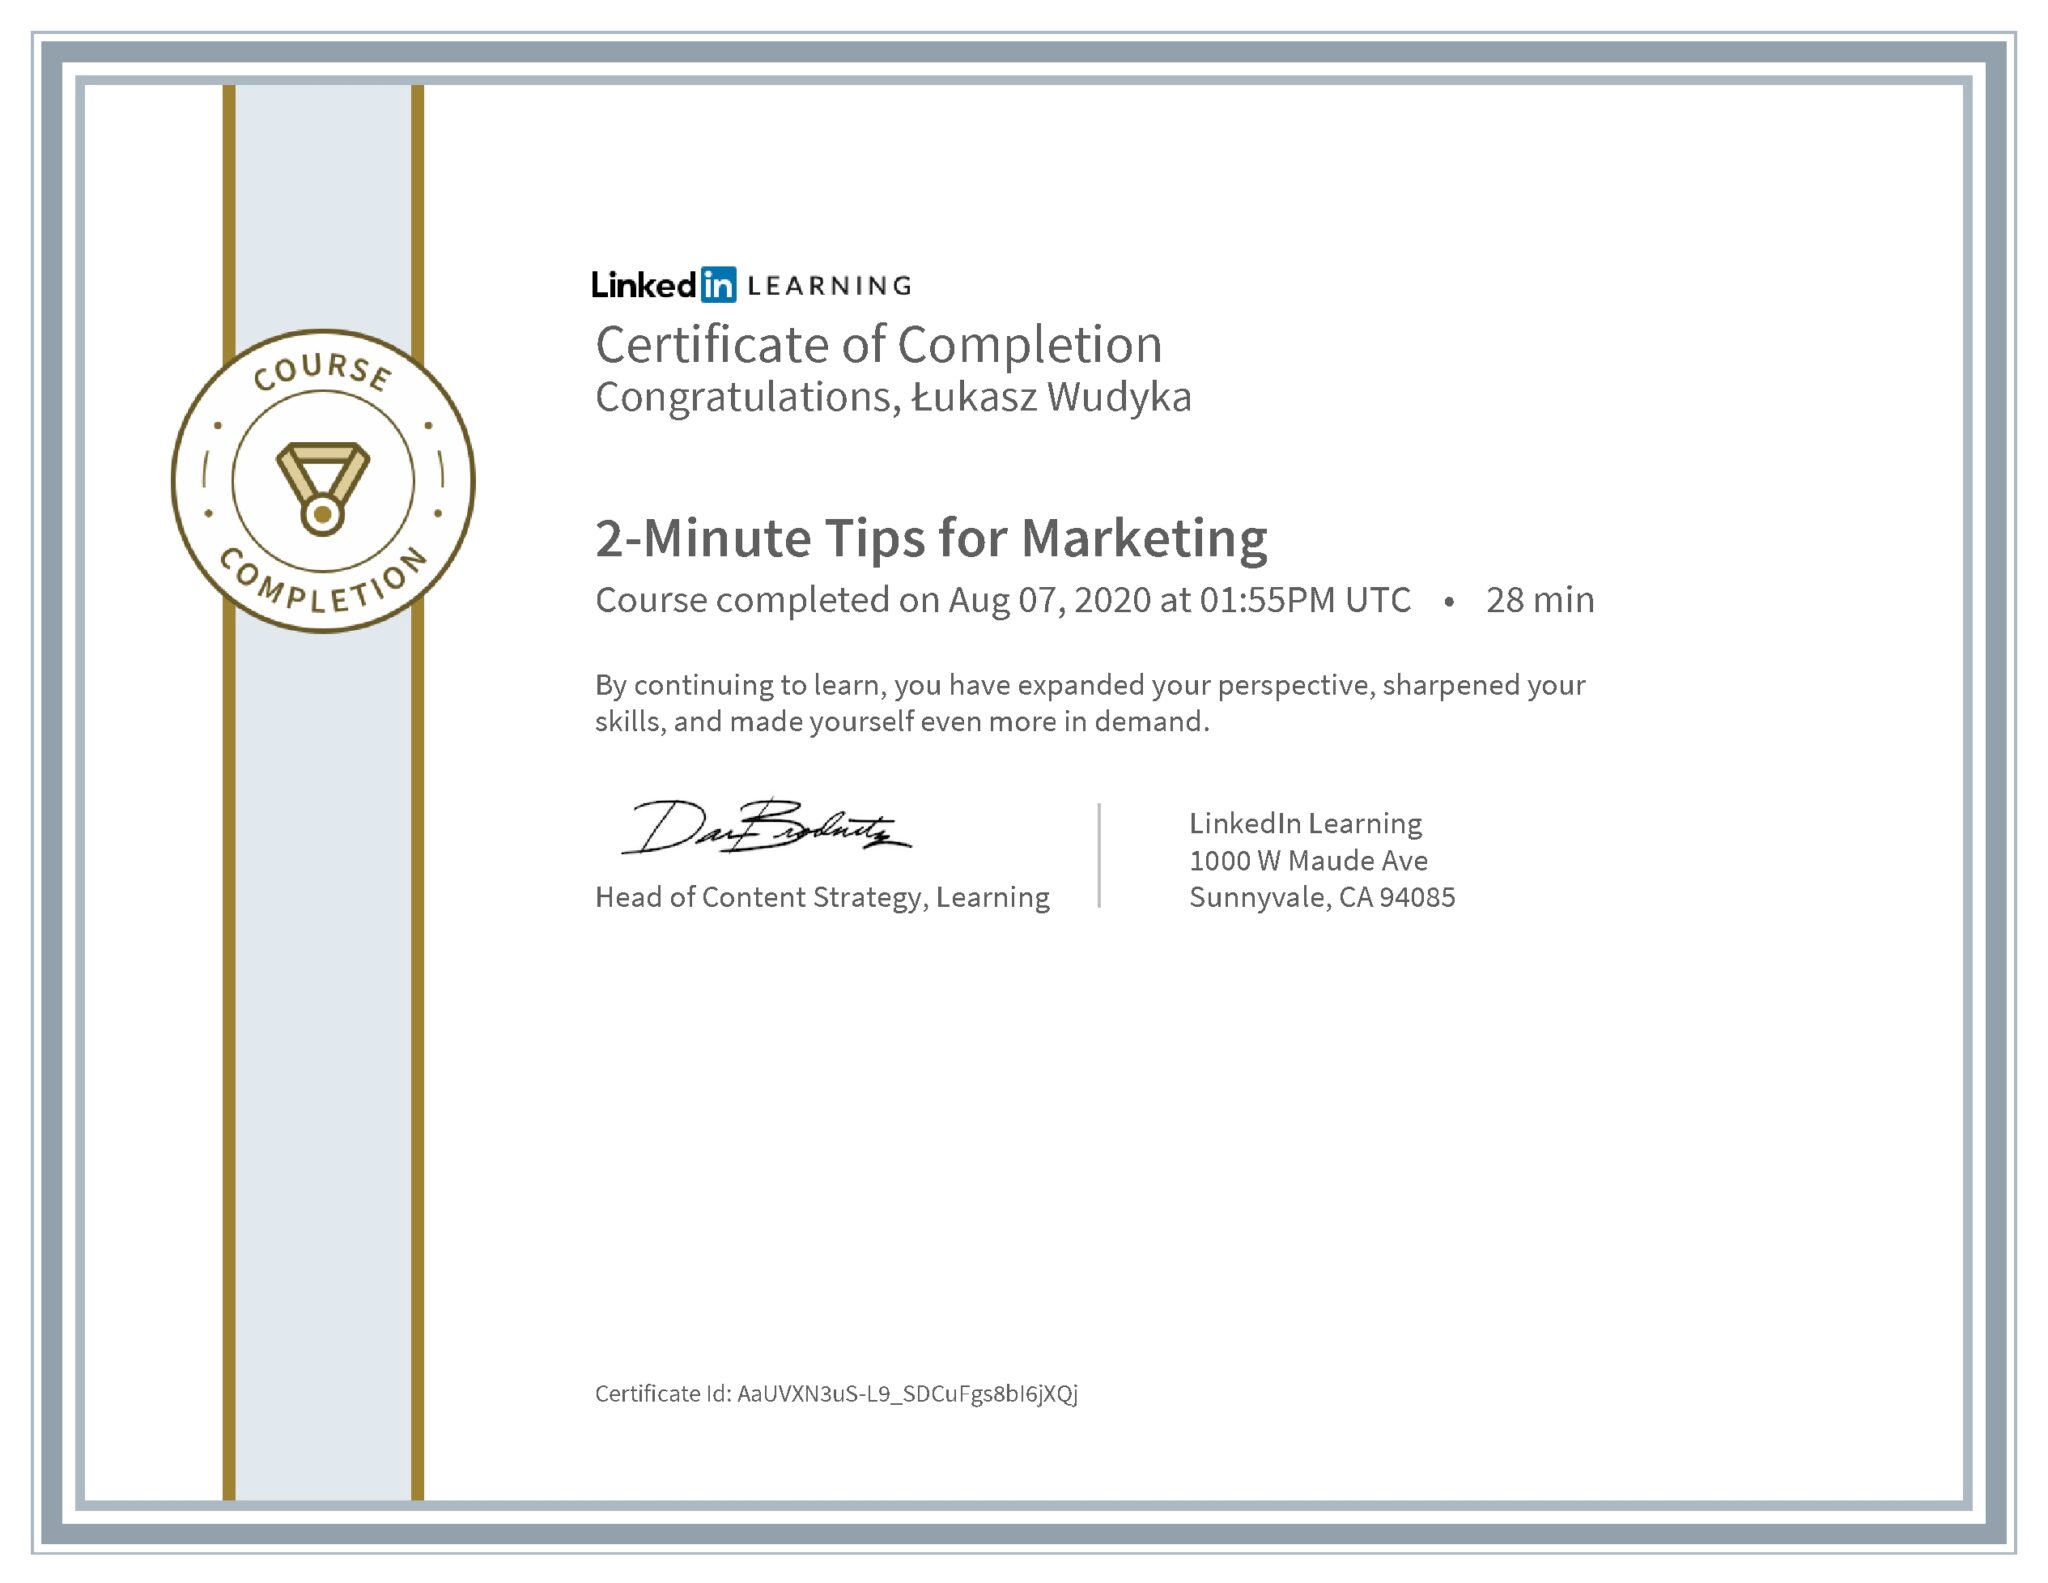 Łukasz Wudyka certyfikat LinkedIn 2-Minute Tips for Marketing